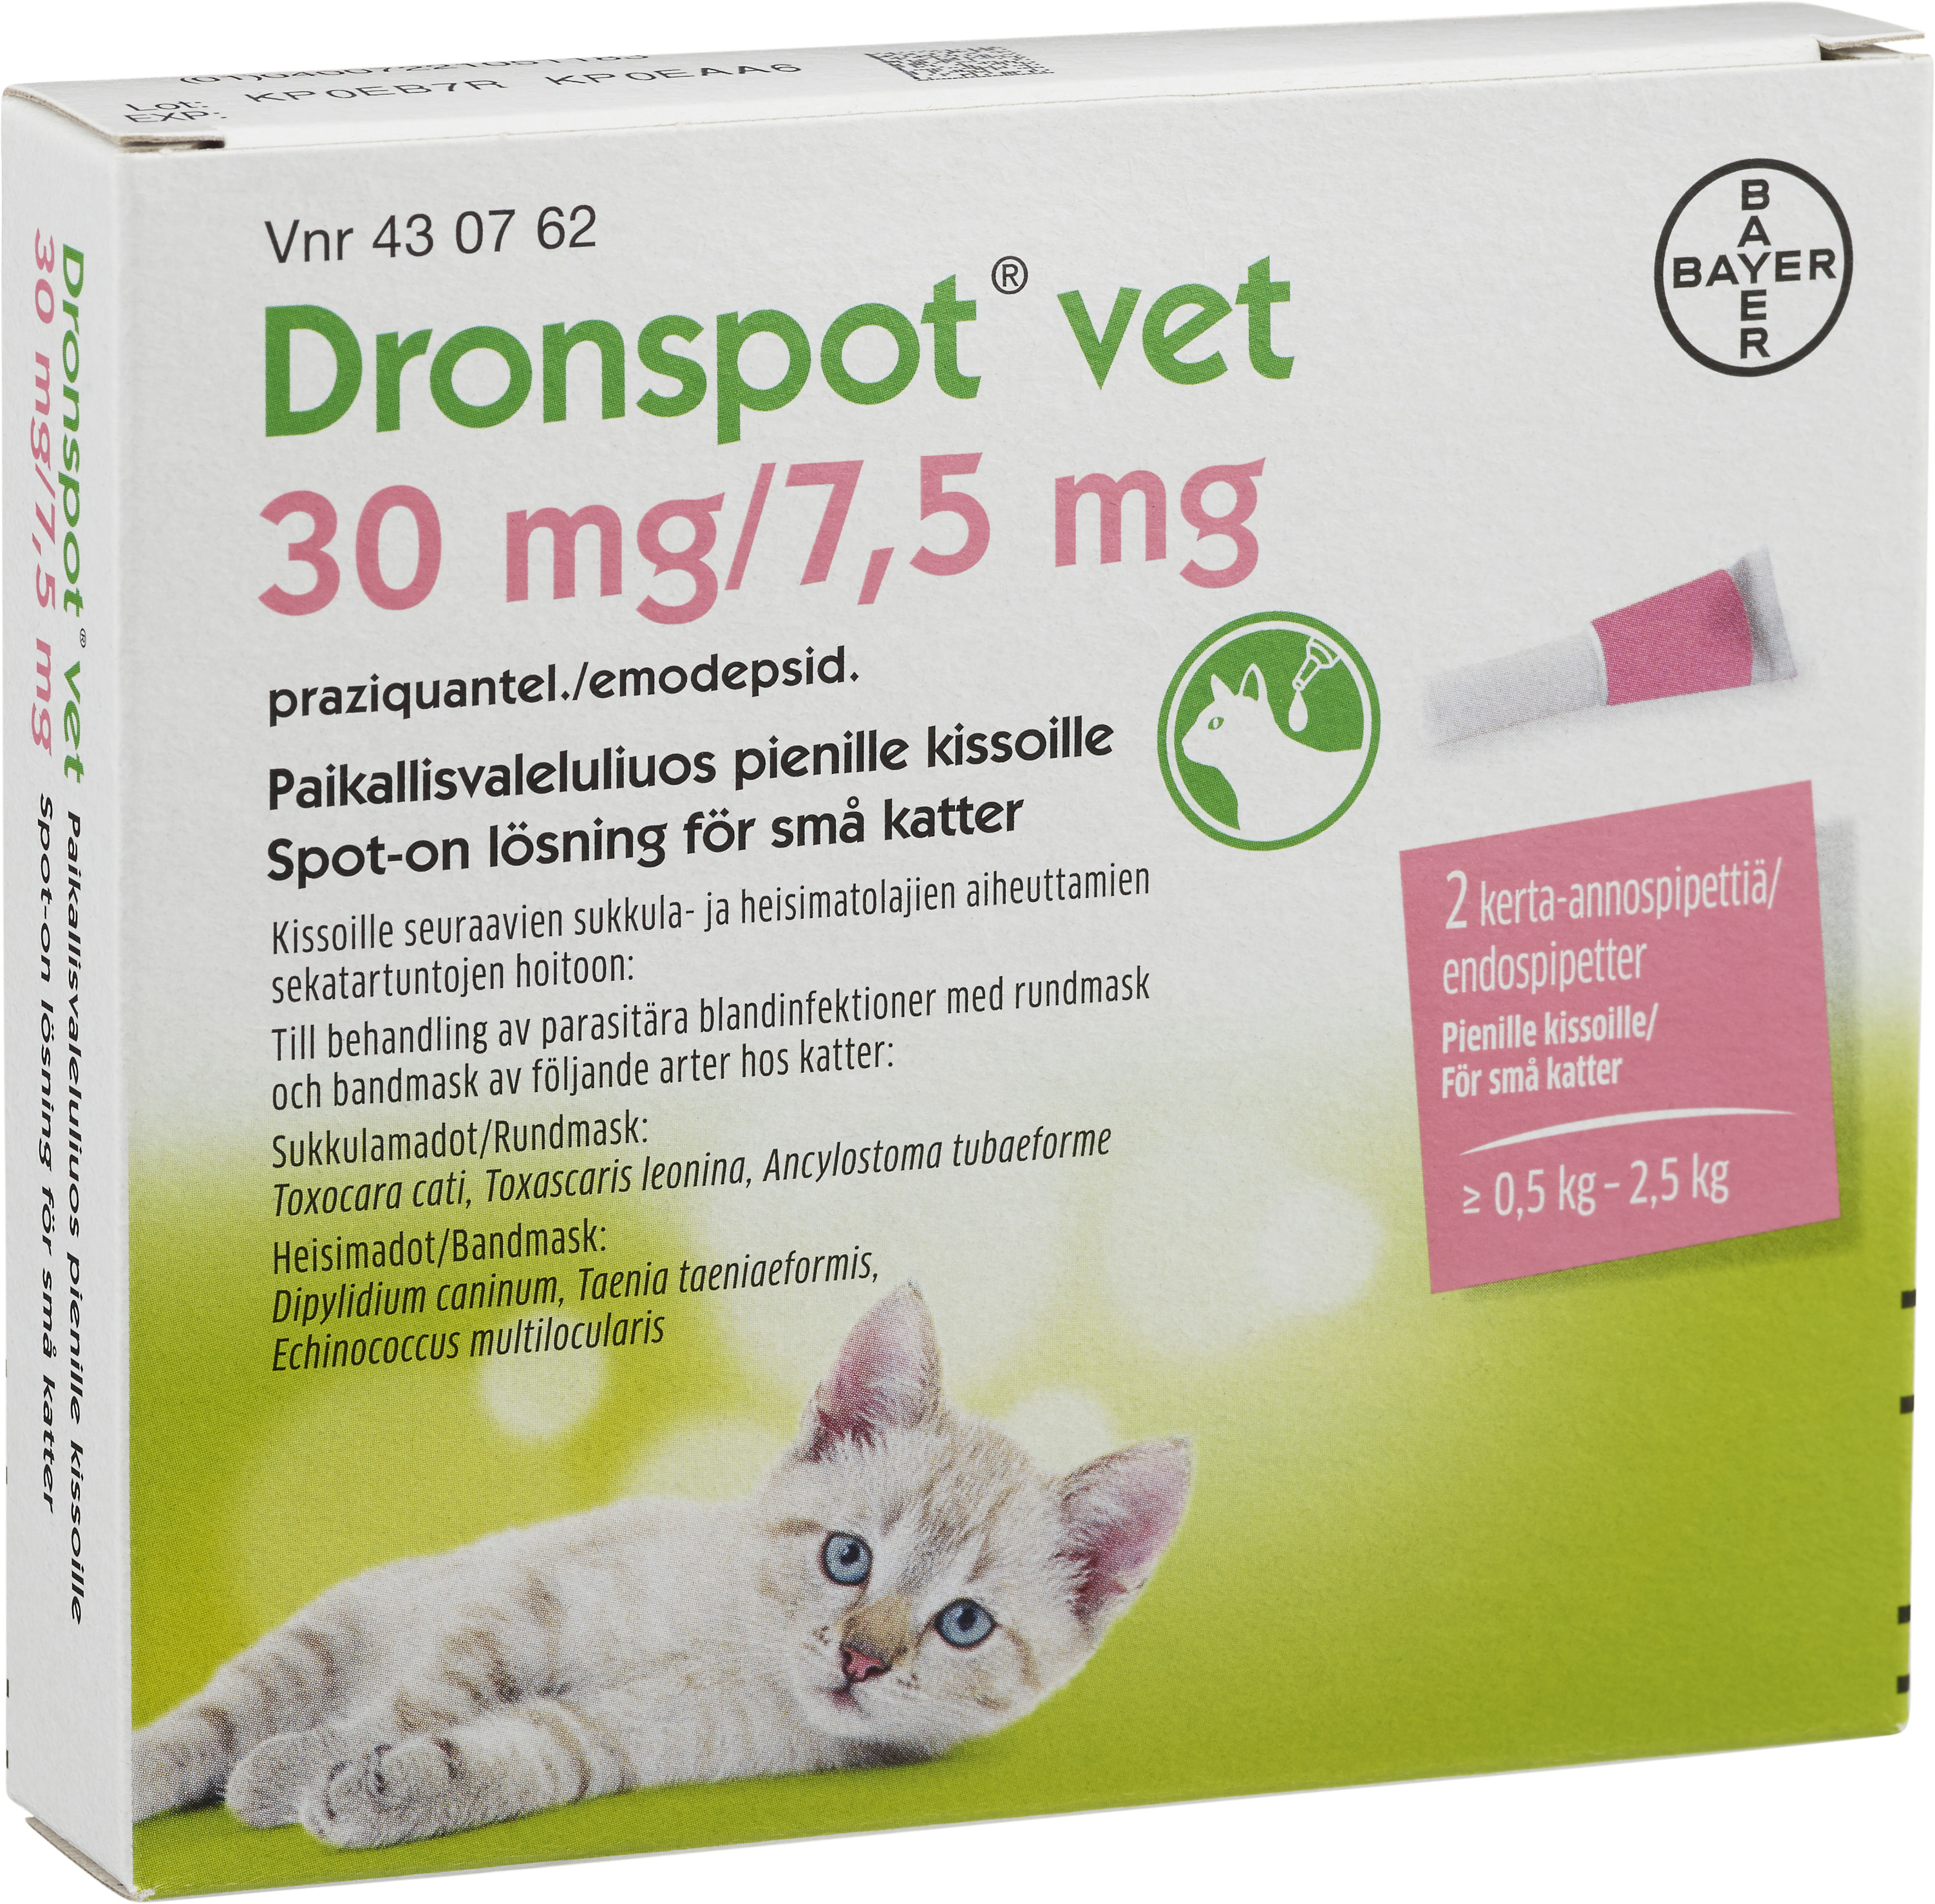 Köp Dronspot 30 mg/ 7,5 Spot-on lösning för små katte | Apohem